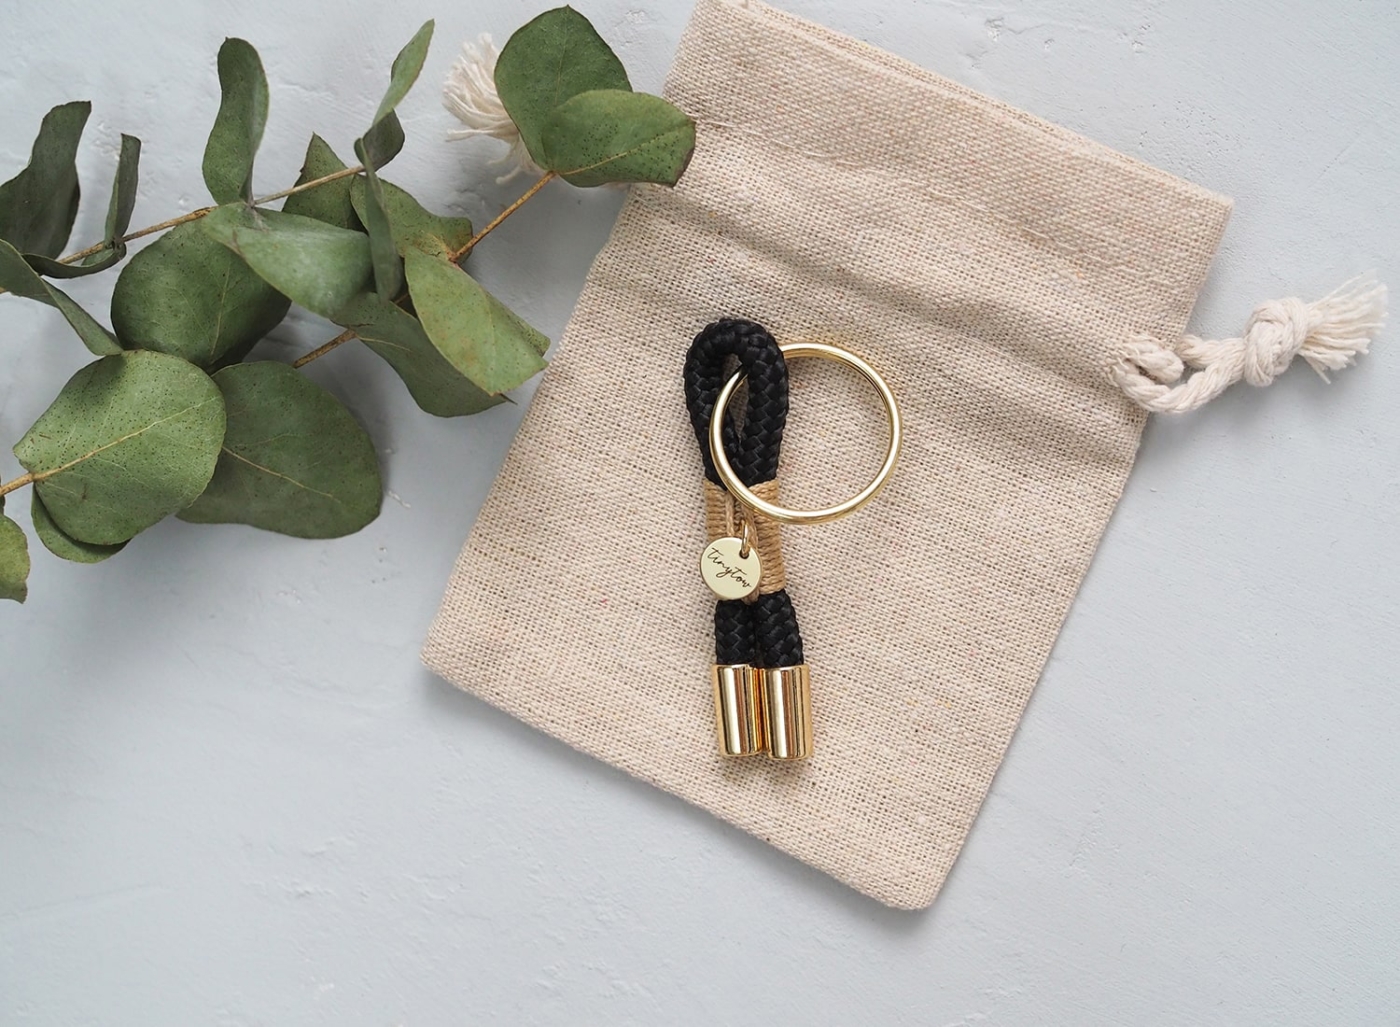 Schlüsselanhänger aus Tau in schwarz beige mit goldenen Details.